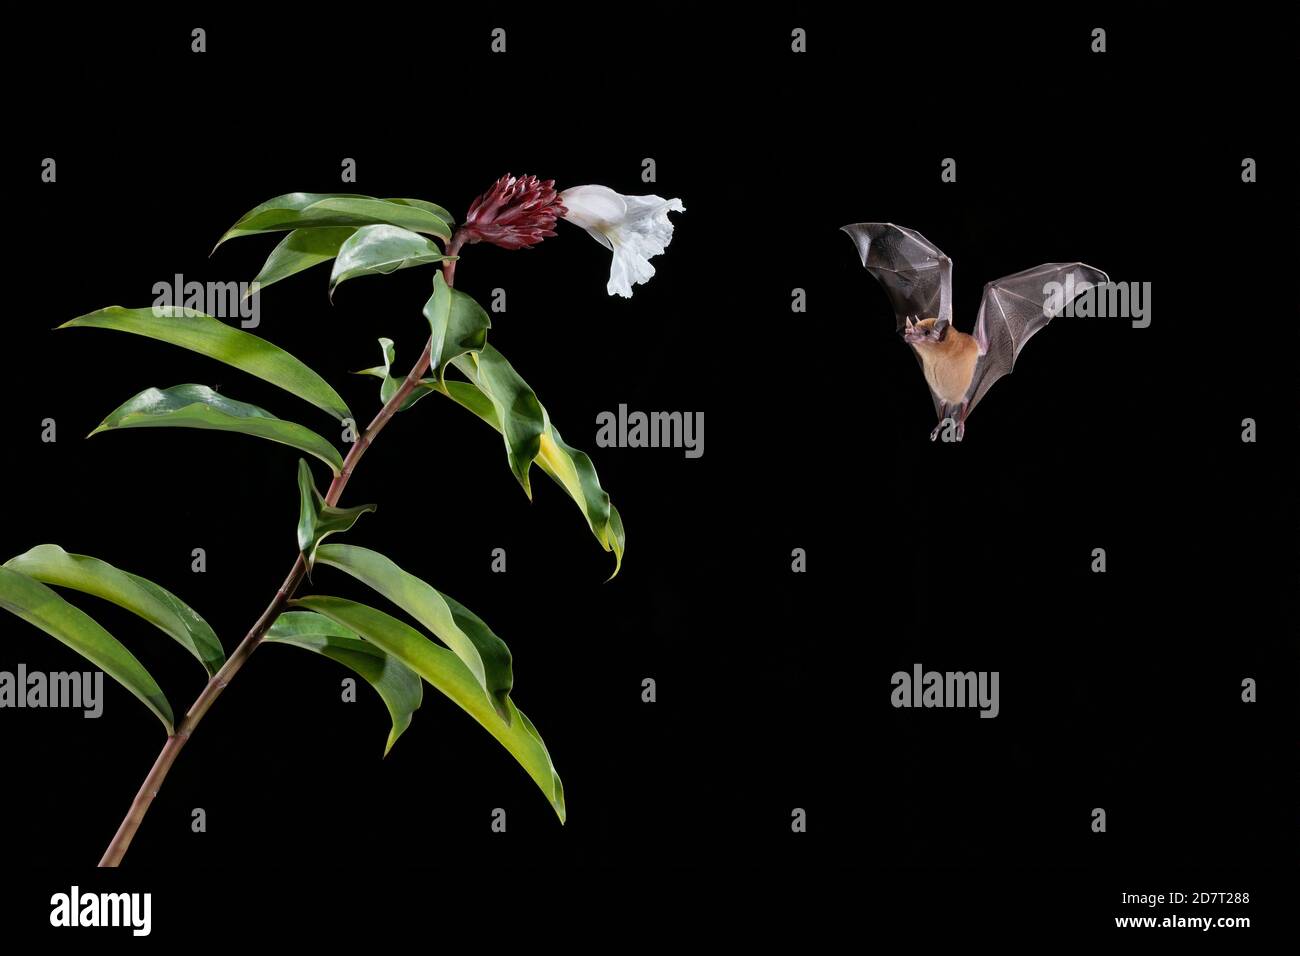 Bat de Nectar d'orange (Lonchophylla robusta) se nourrissant de fleurs, forêt tropicale des basses terres, Costa Rica Banque D'Images